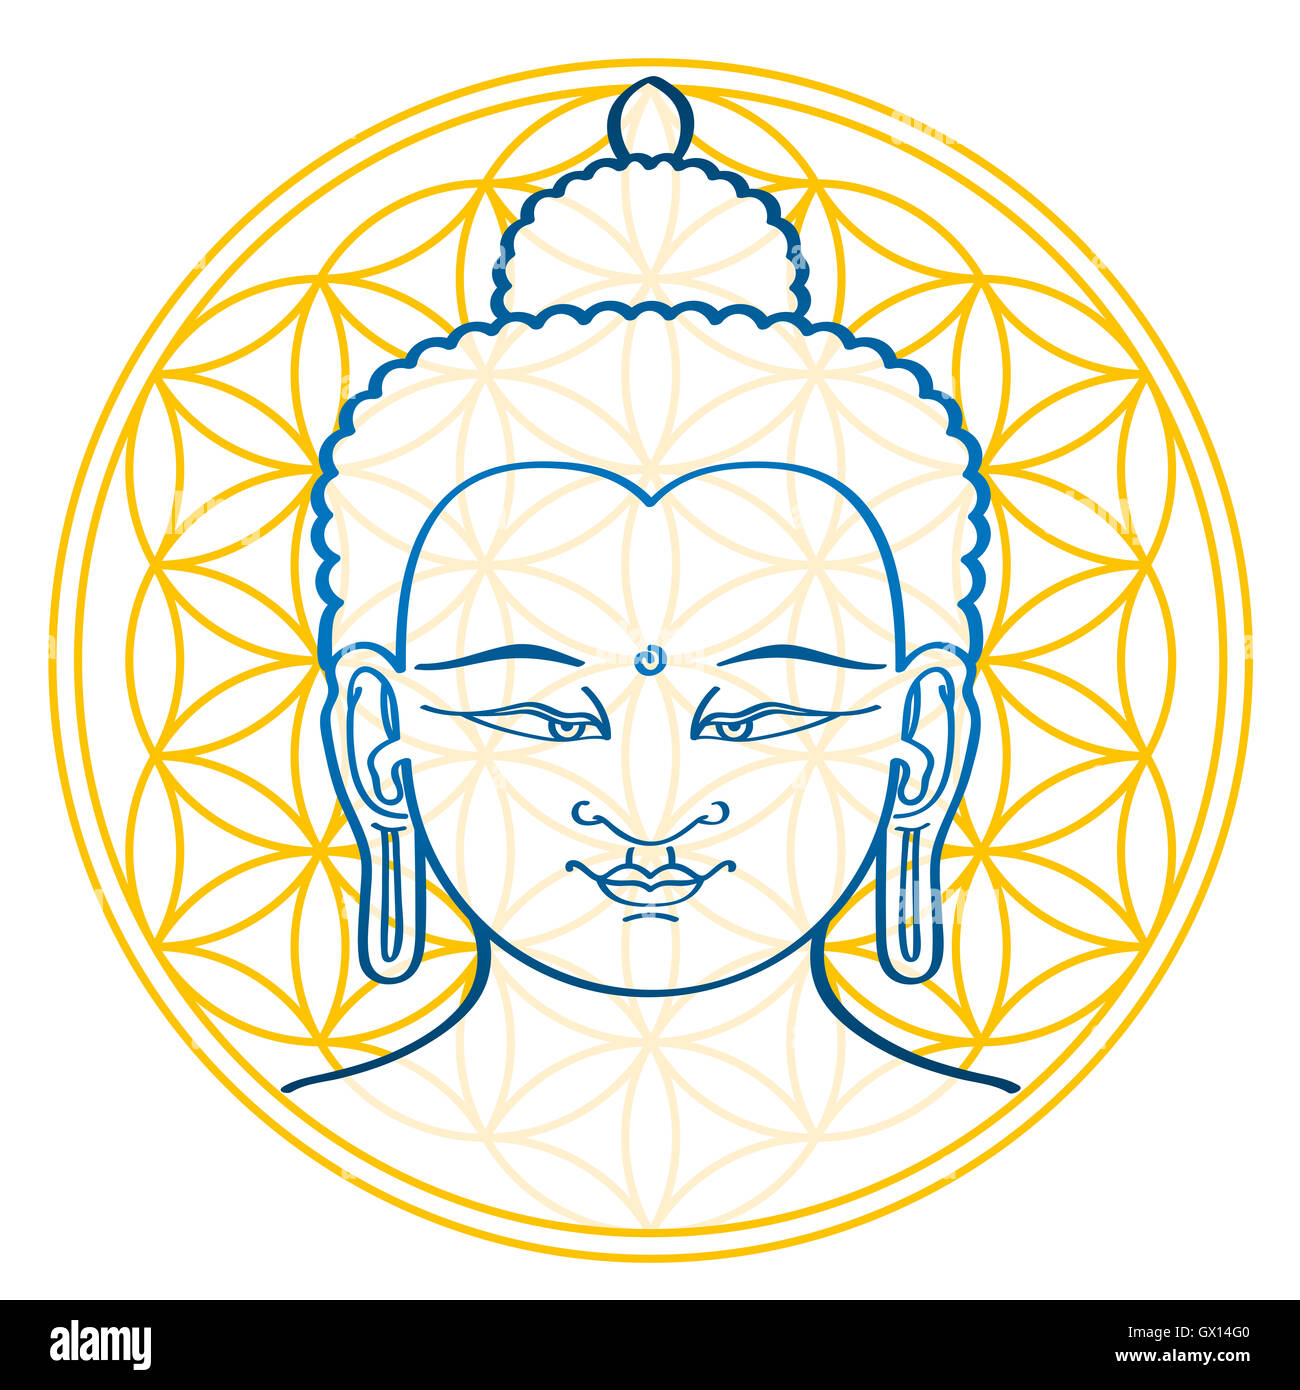 Bouddha et la Fleur de Vie, une figure géométrique et l'ancien symbole, composé de multiples uniformément espacés, cercles se chevauchant. Banque D'Images